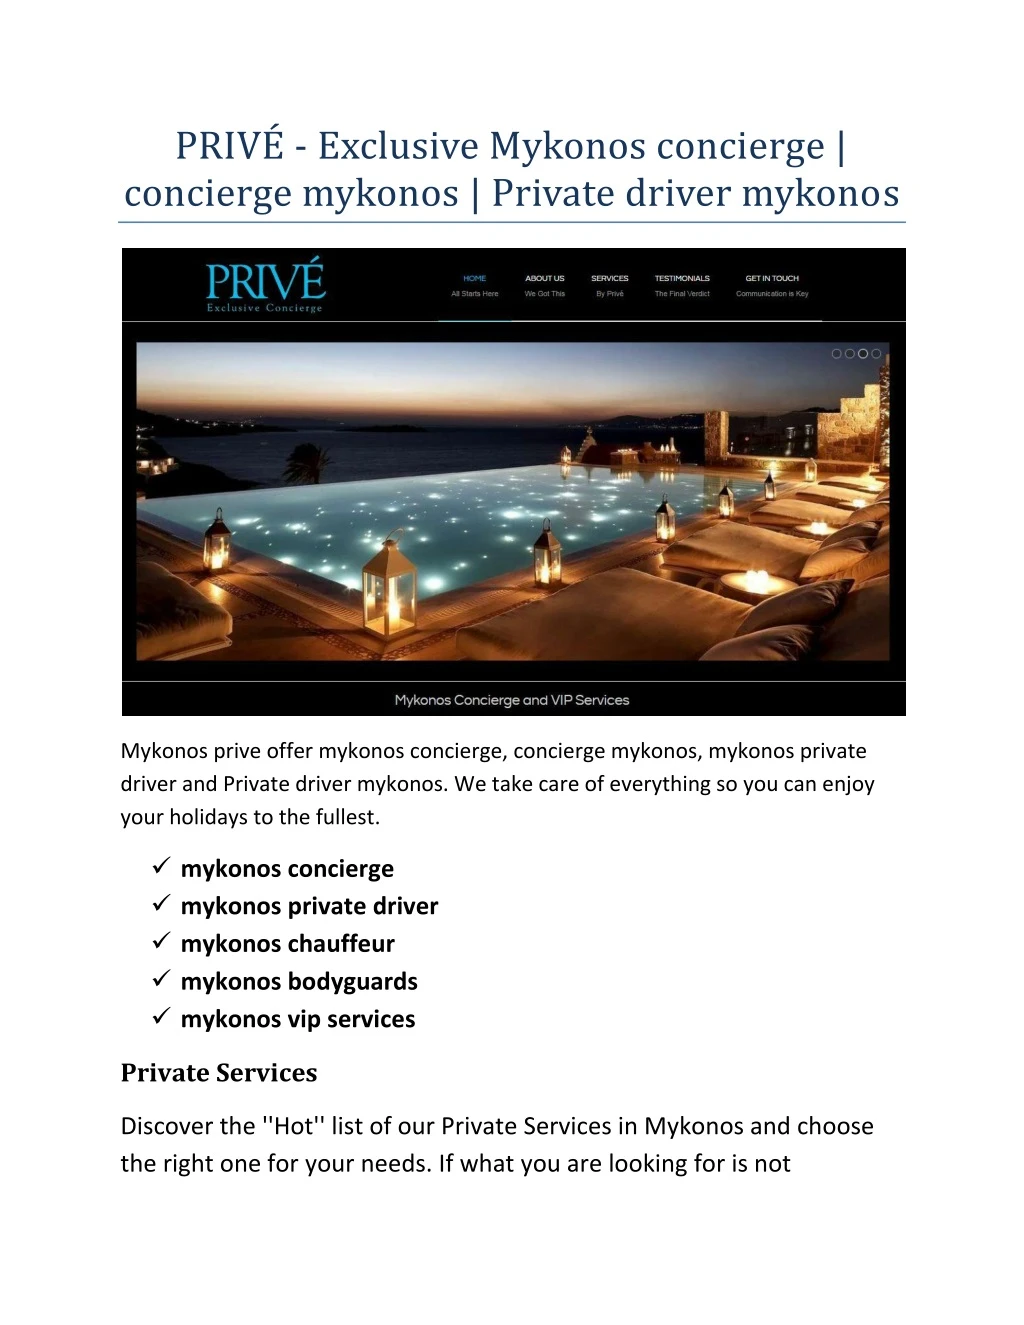 priv exclusive mykonos concierge concierge